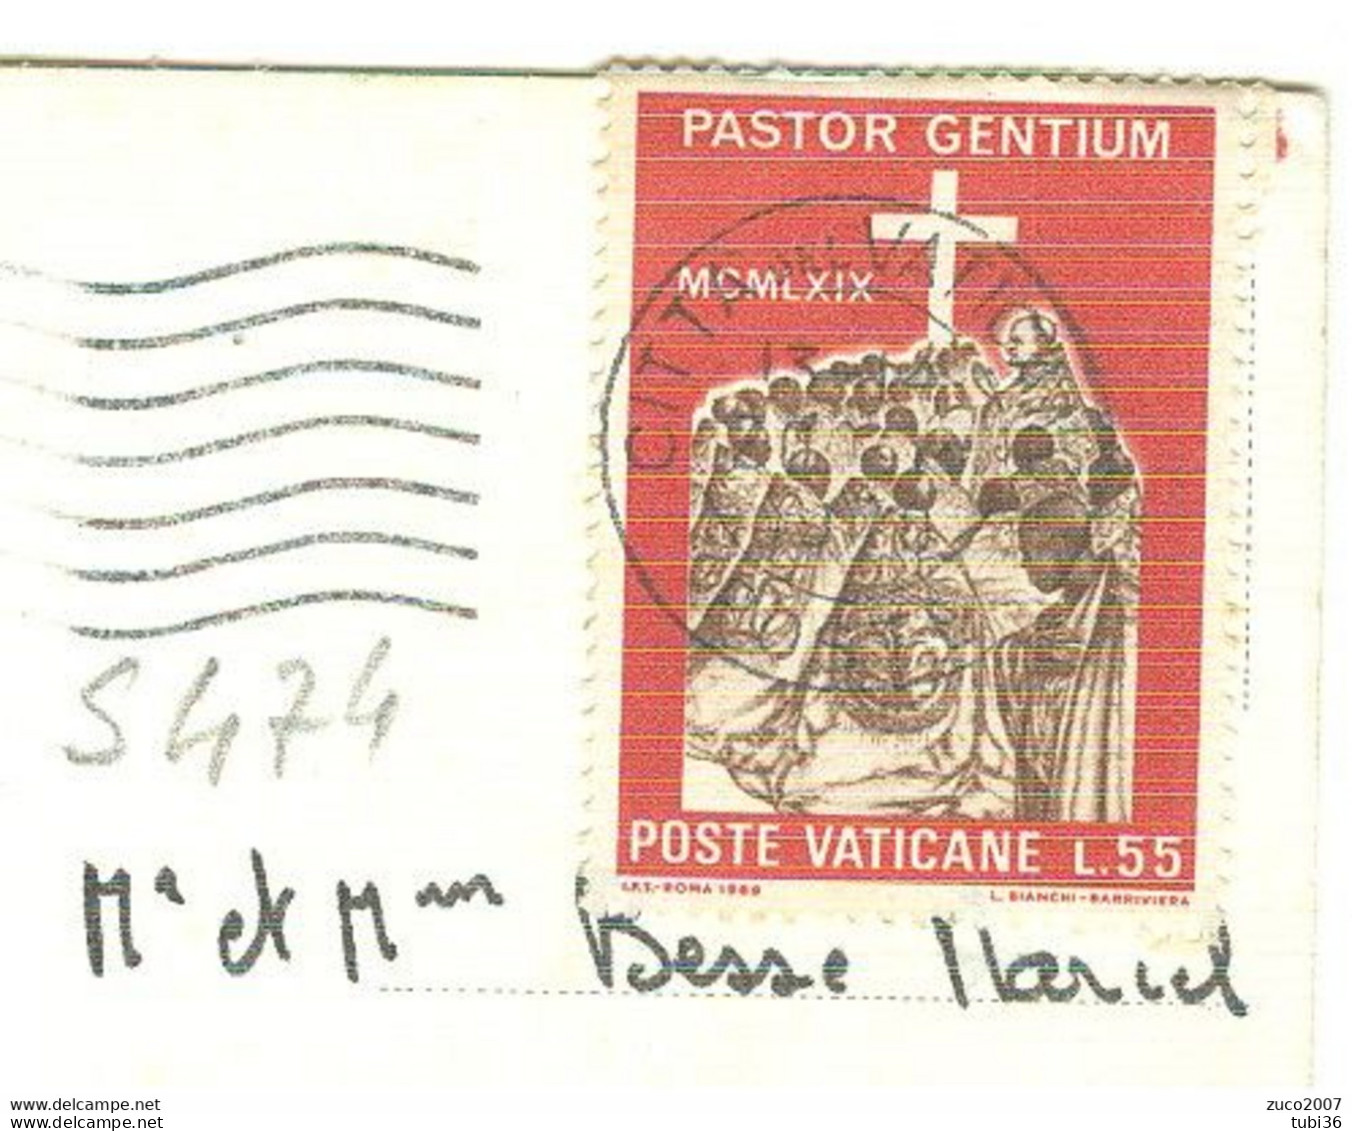 VATICANO - Viaggio Di Paolo VI In Africa  £.55 (s474) -TIMBRO POSTE CITTA DEL VATICANO - FRANCIA - Covers & Documents